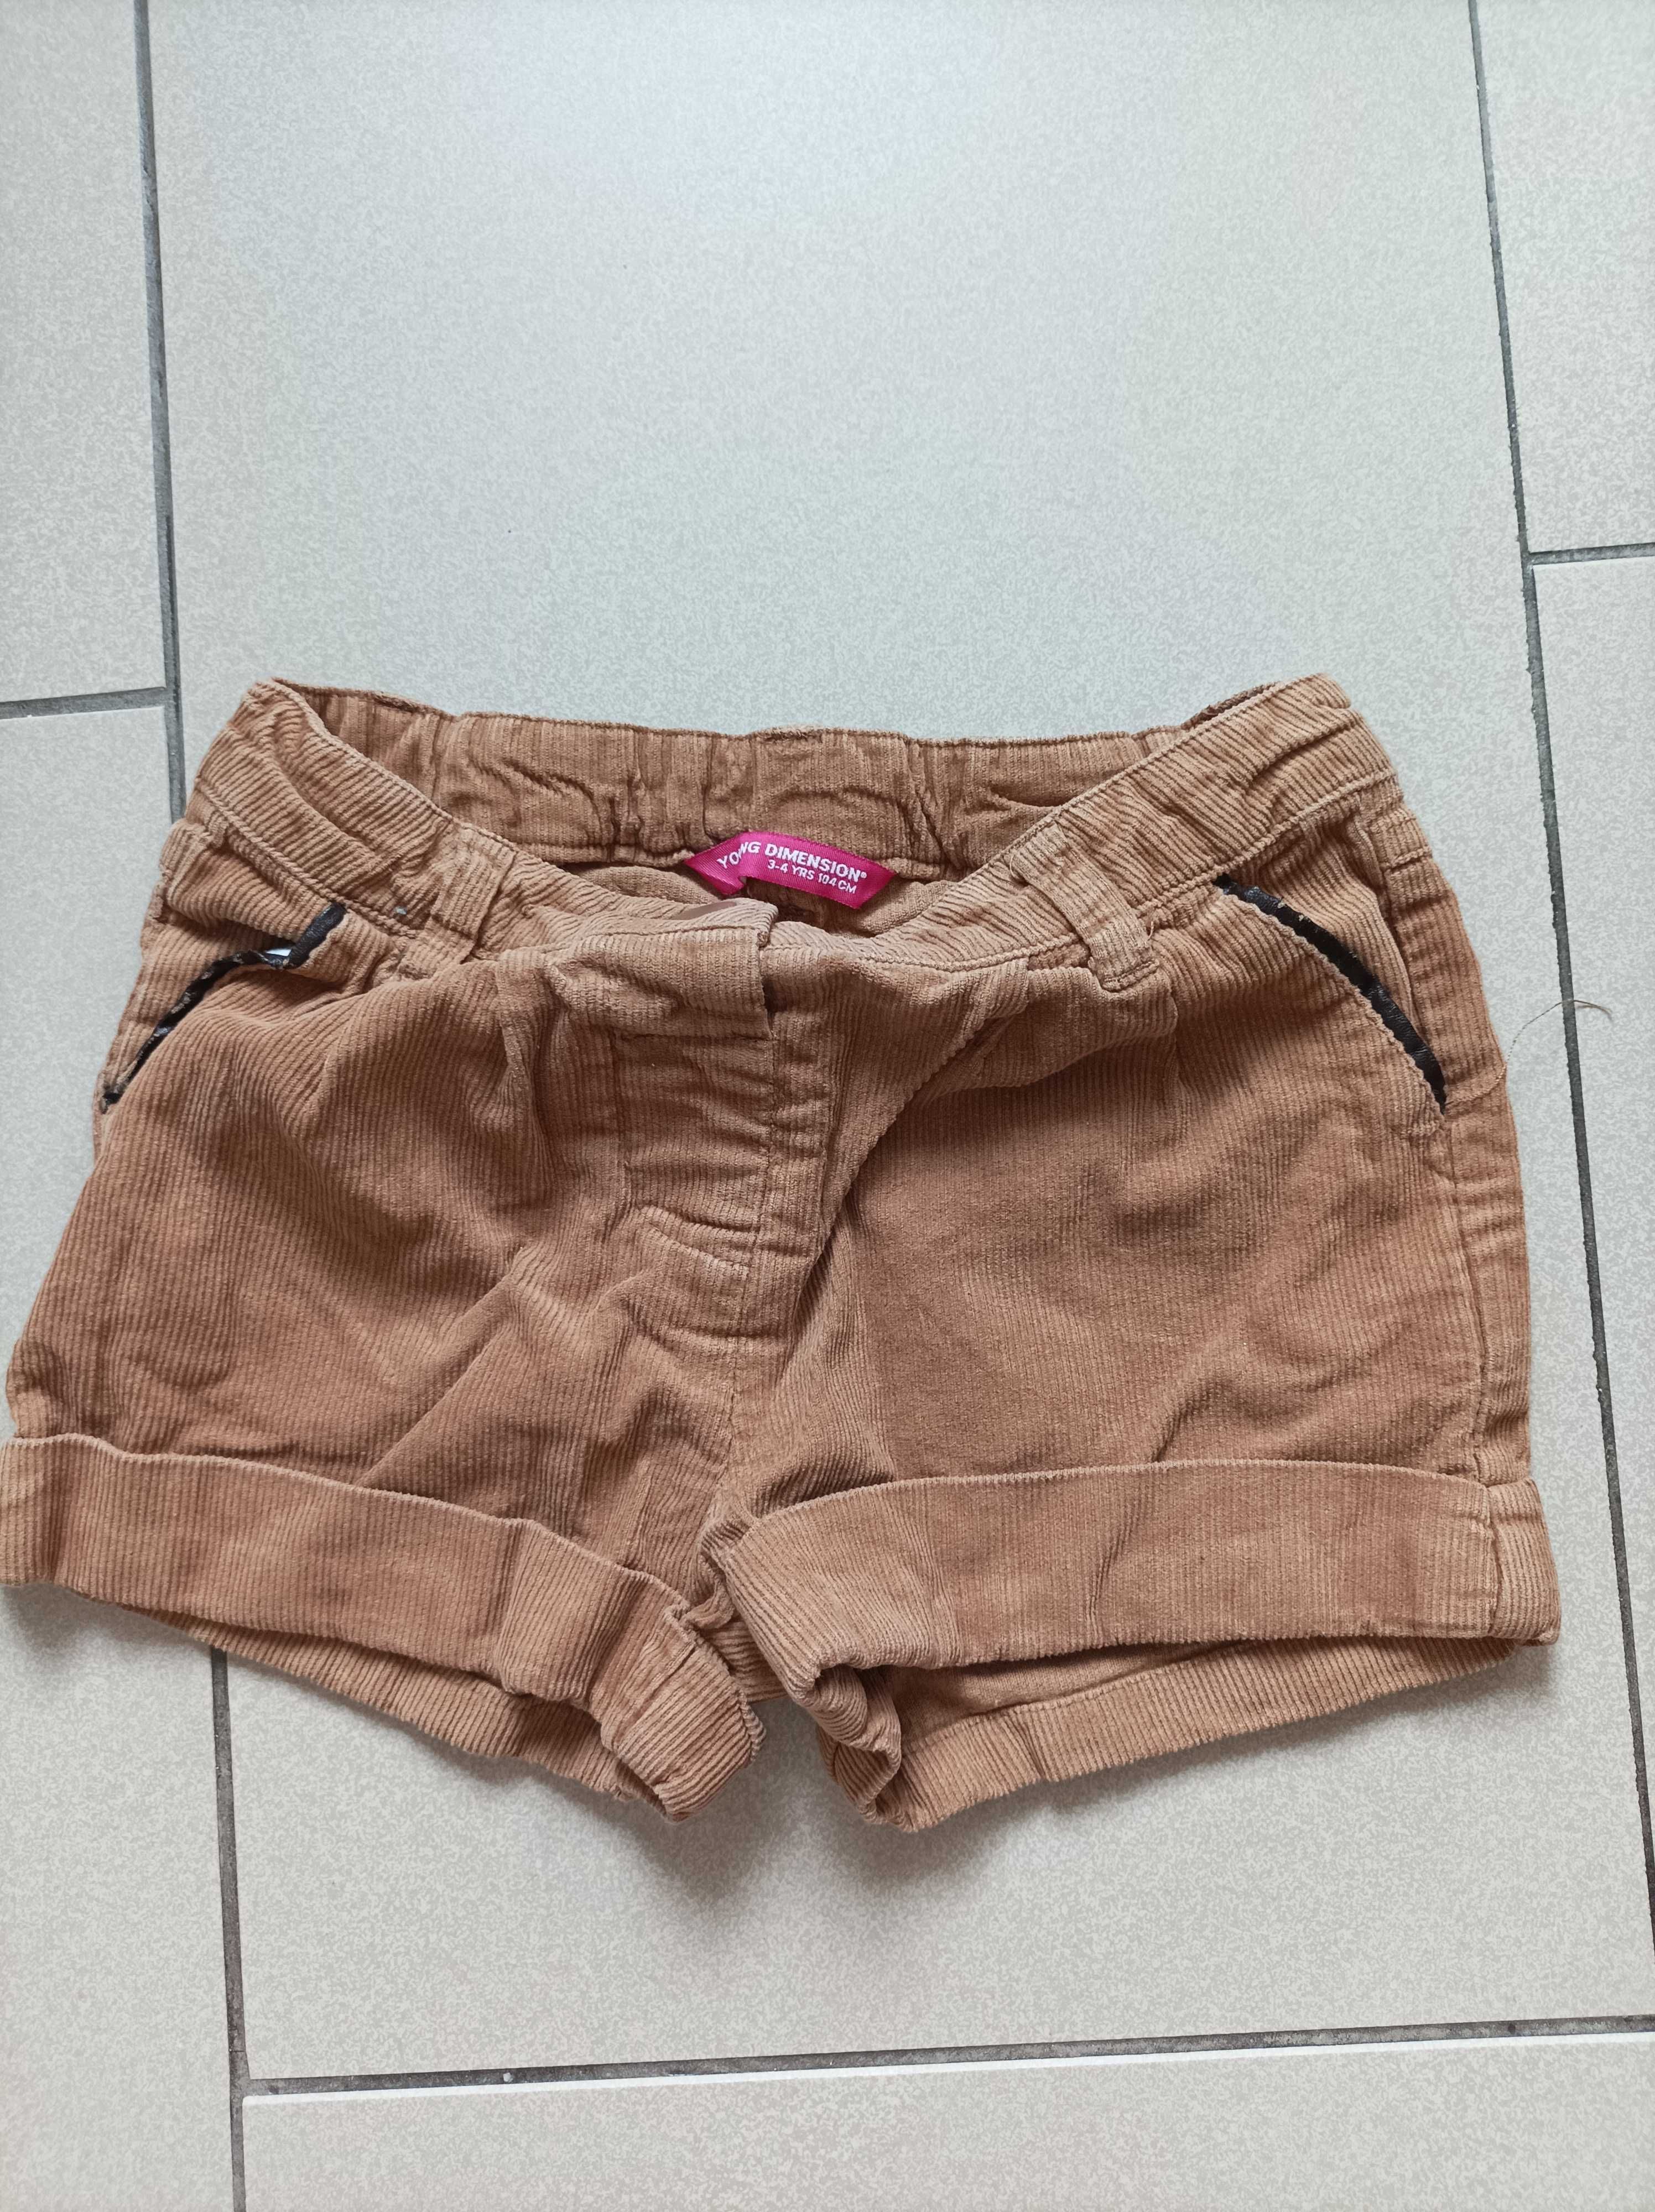 Szorty spódniczka na lato dla dziewczynki jeansowa, 98/104, 4 szt